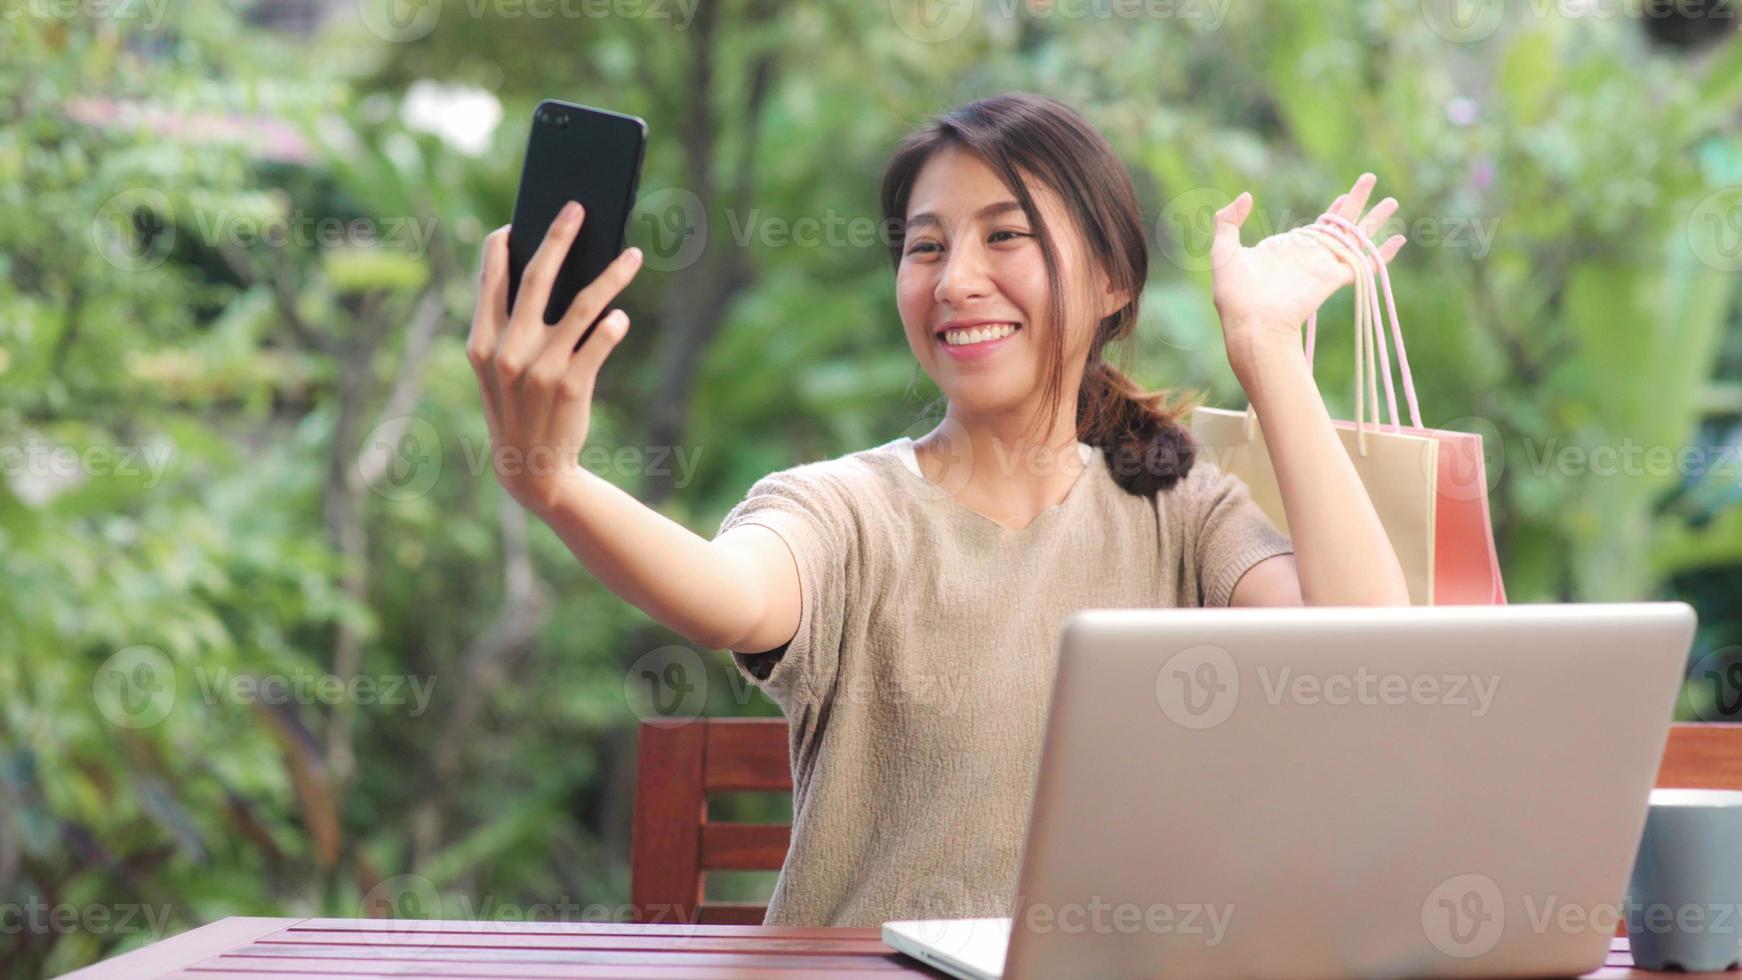 asiatisk kvinna som använder mobiltelefon selfie inlägg i sociala medier, kvinnlig koppla av känner sig glad och visar shoppingkassar som sitter på bordet i trädgården på morgonen. livsstil kvinnor slappna av hemma koncept. foto